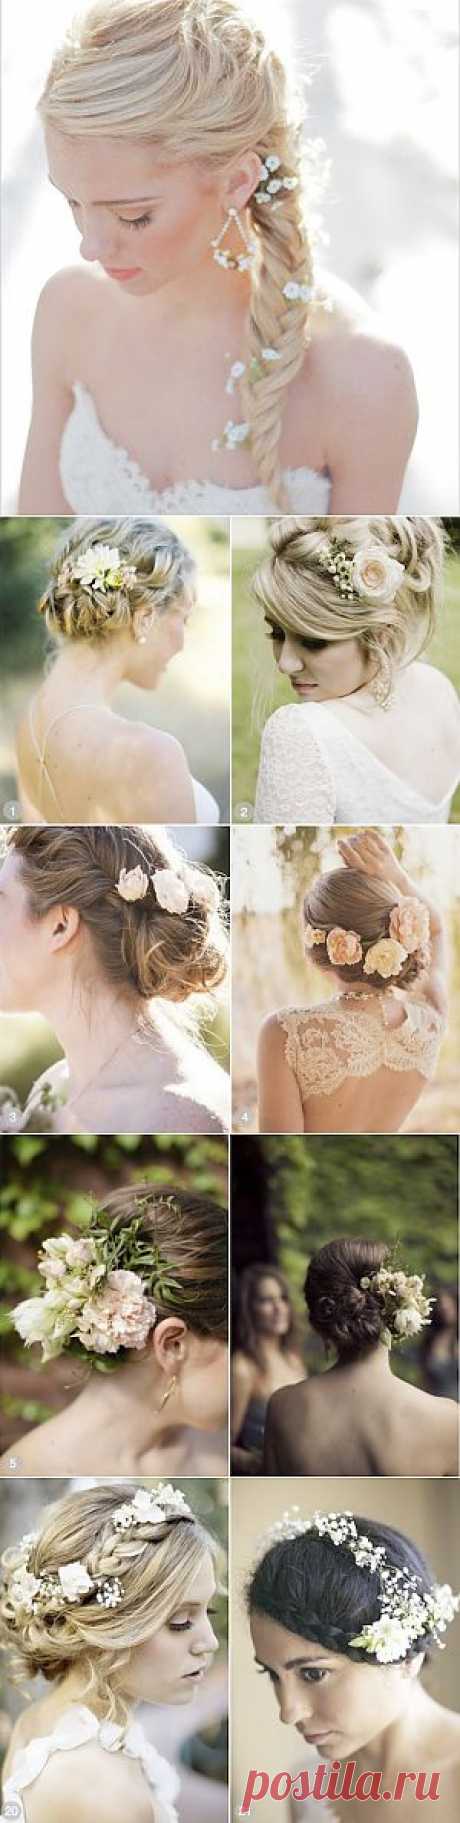 Свадебные причёски с цветами: 50 супер-романтичных вариантов | Самоцветик